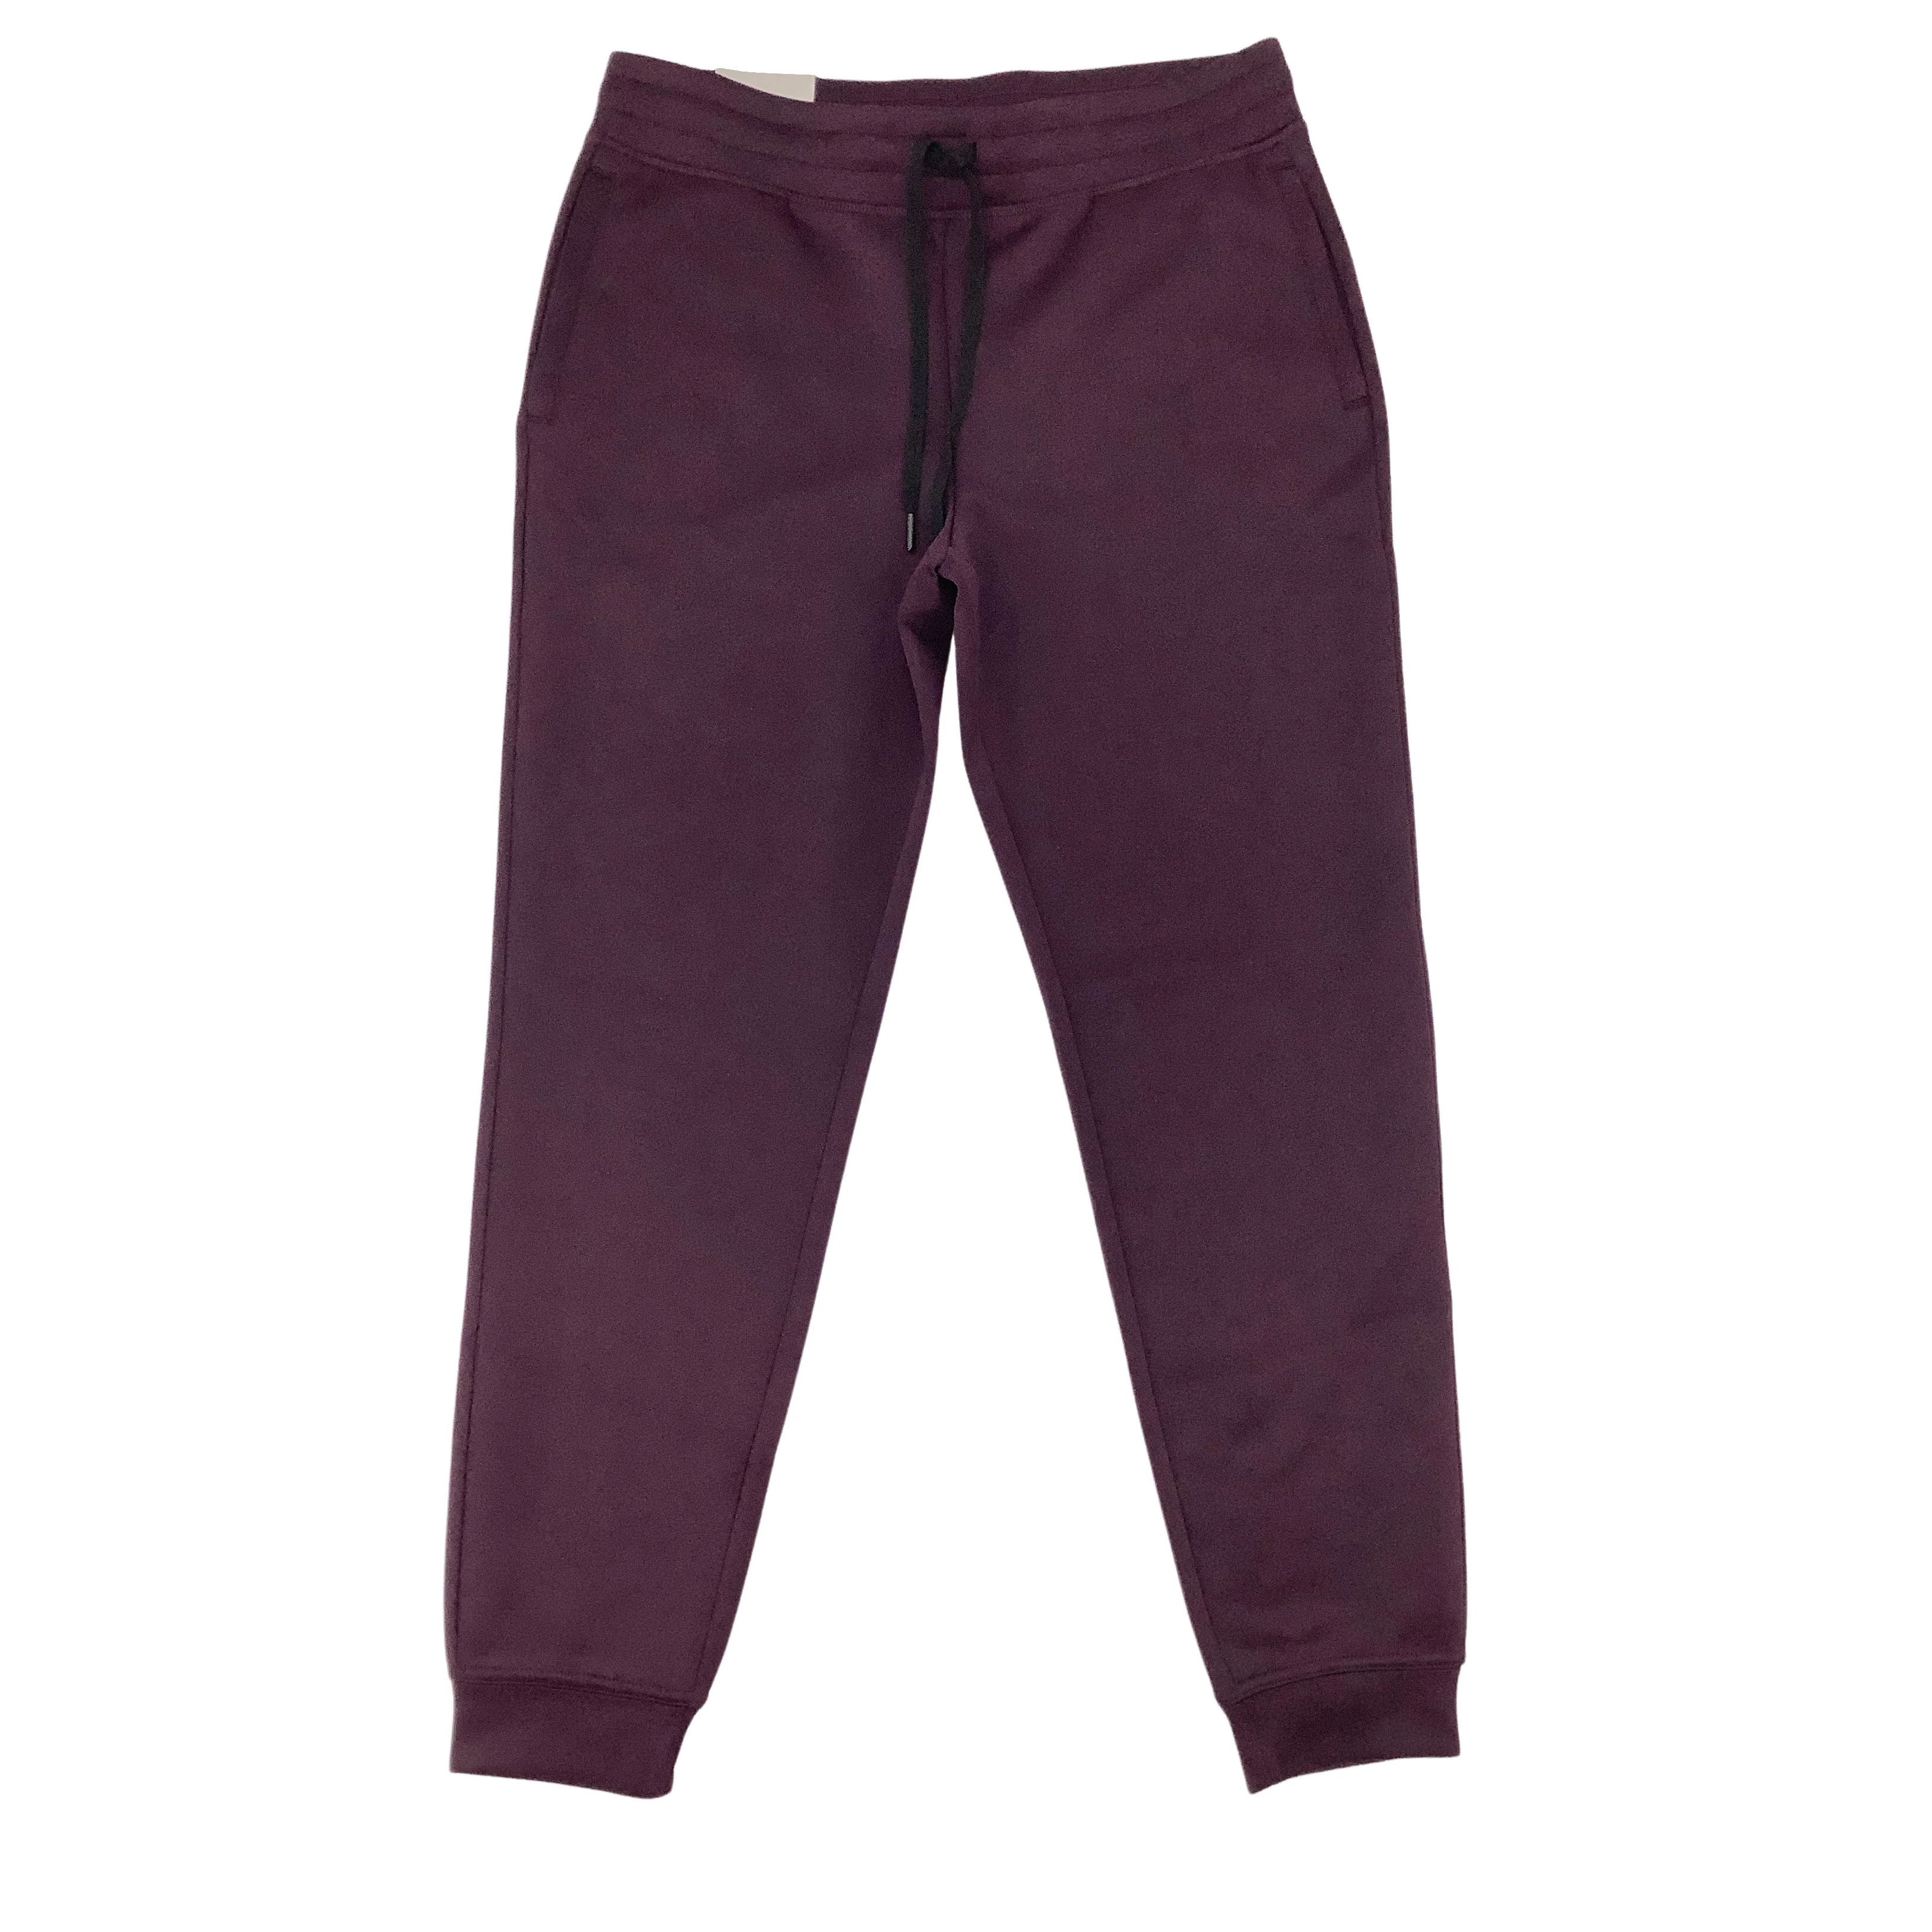 32 Degrees Heat Women's Sweatpants / Purple / Size S